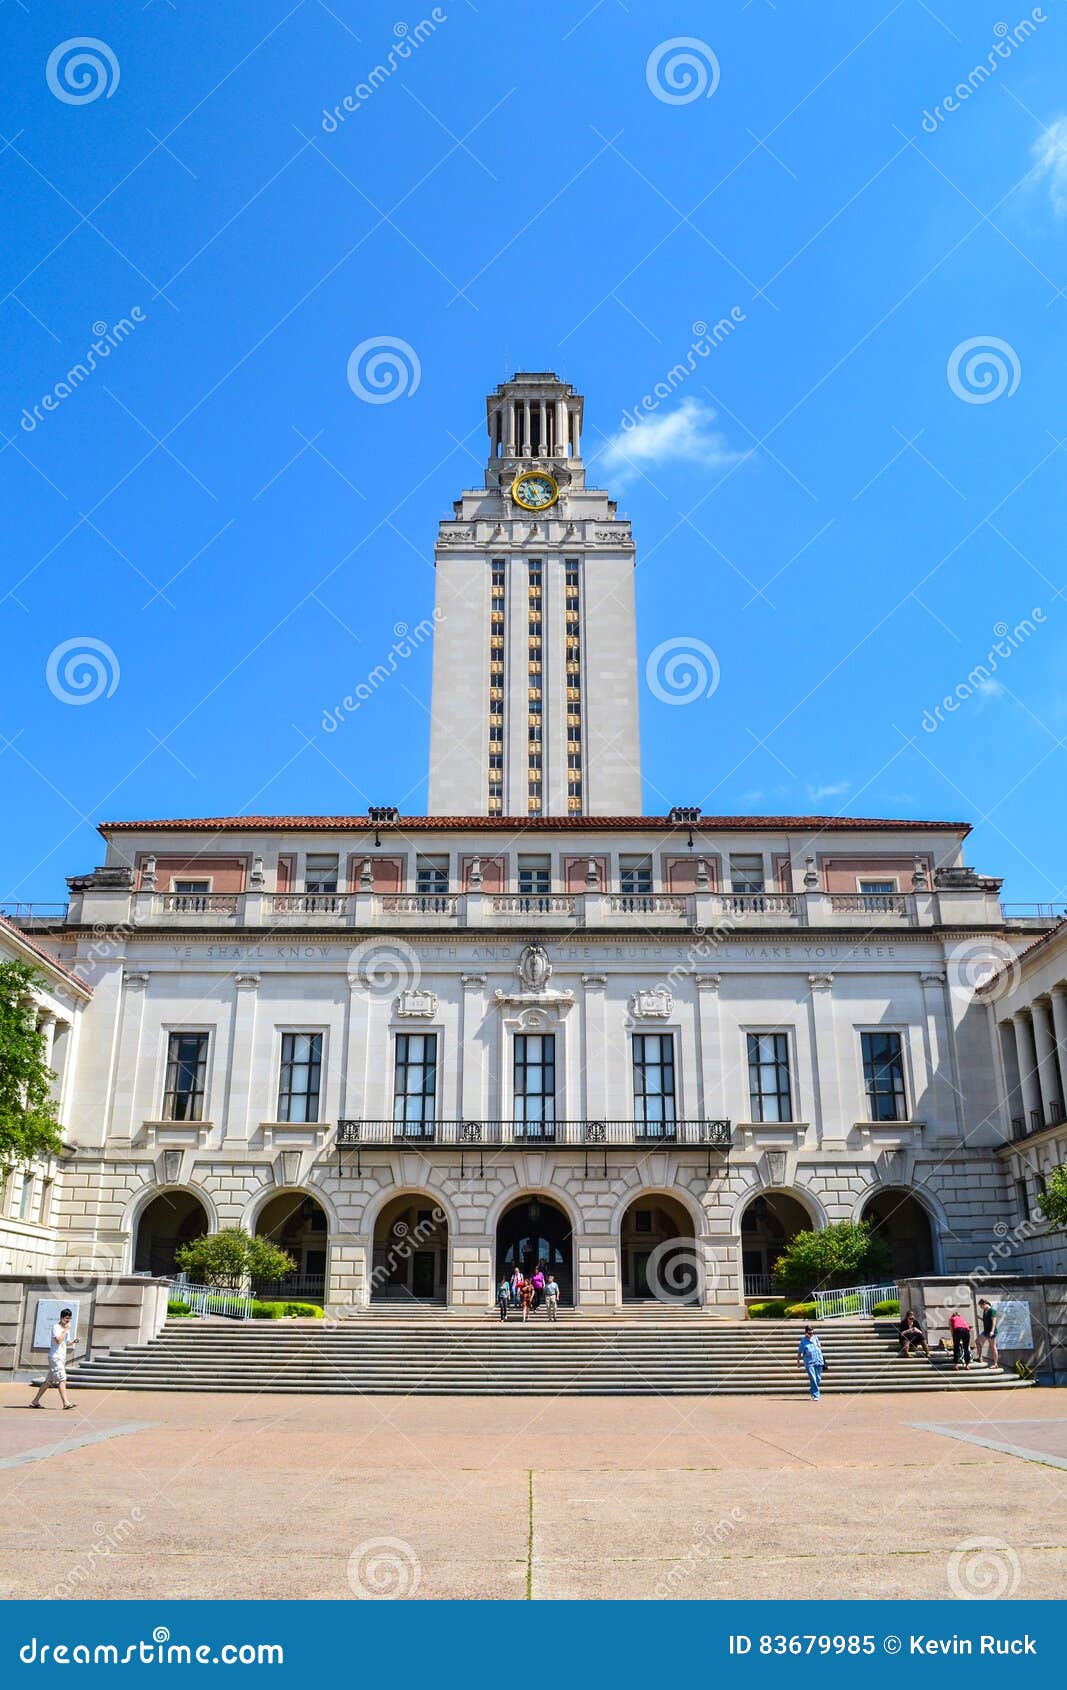 Turm Des Hauptgebaude Ut An Der Universitat Von Texas Austin College Campus Redaktionelles Bild Bild Von Spiel Quad 83679985